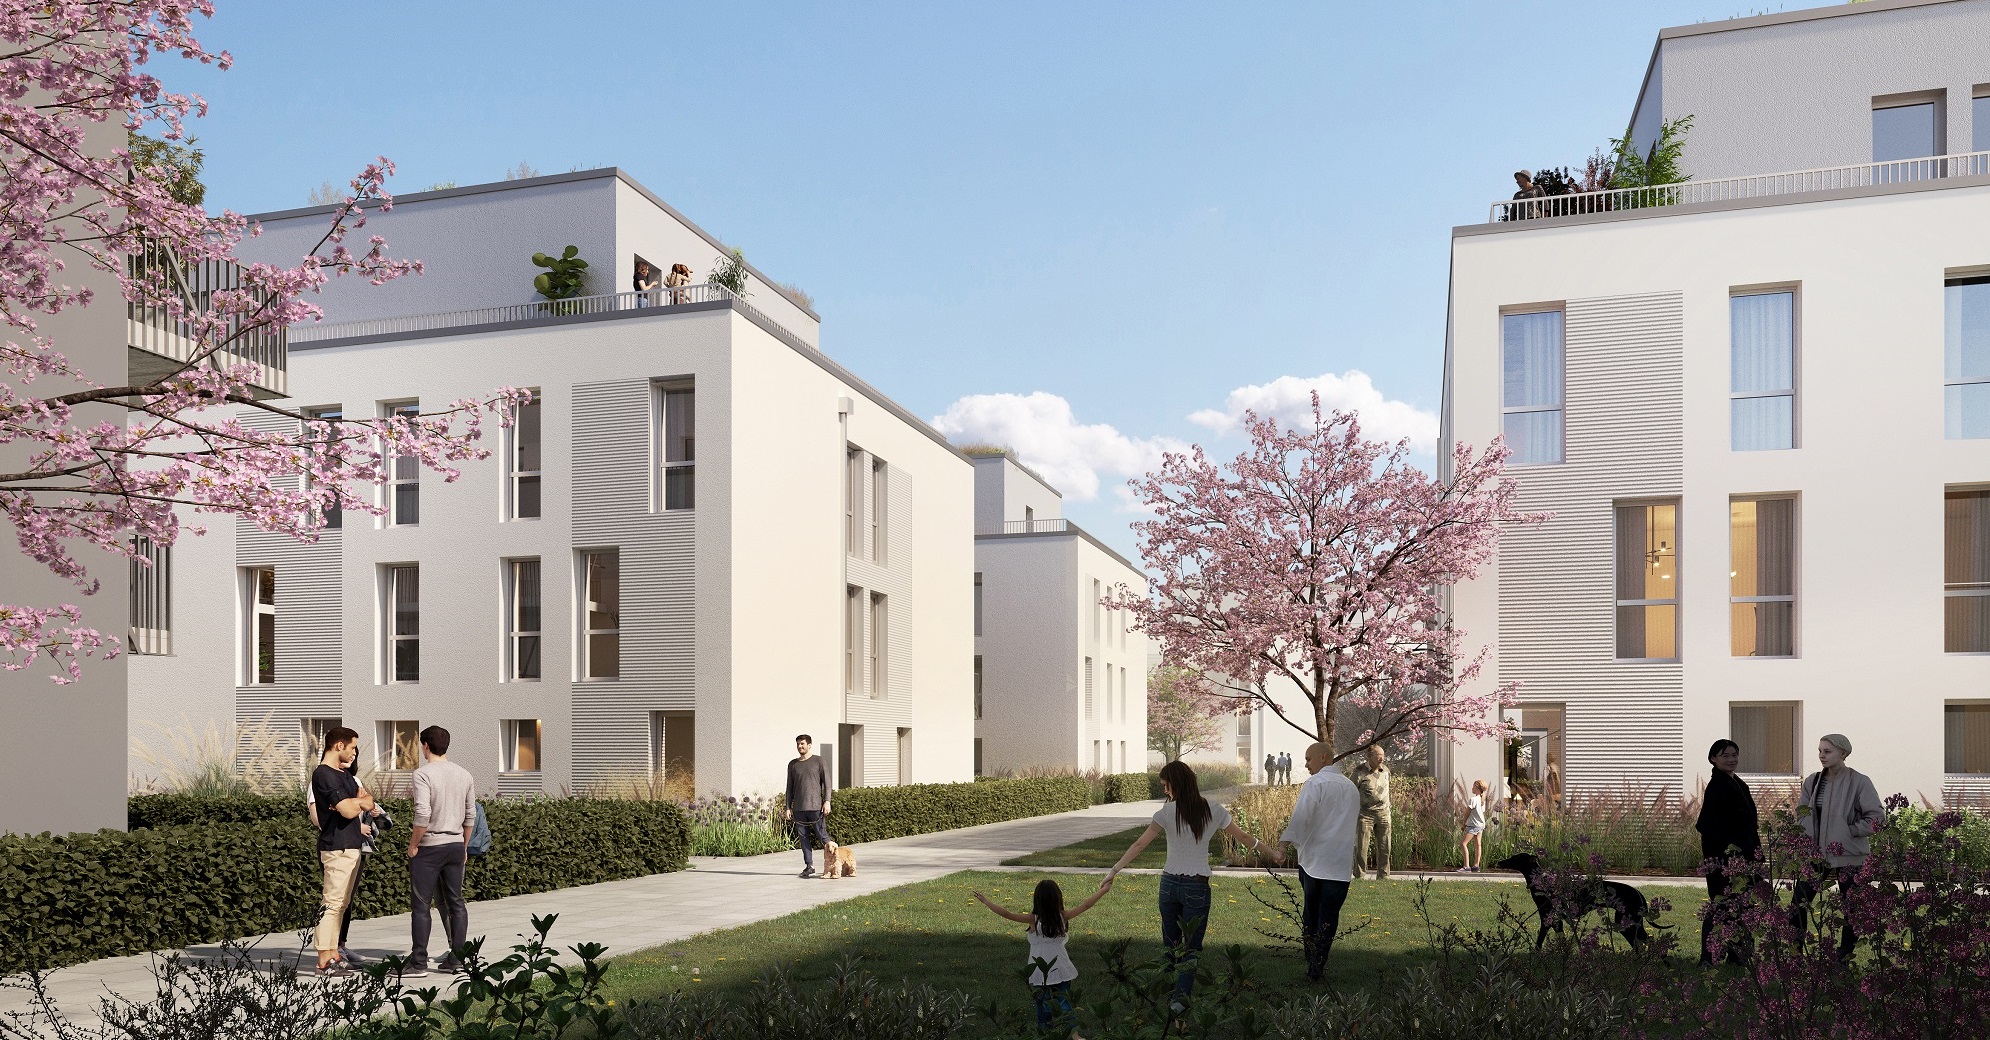 Instone Real Estate begins construction of the "Fuchsgärten" residential neighbourhood in Nuremberg-Boxdorf